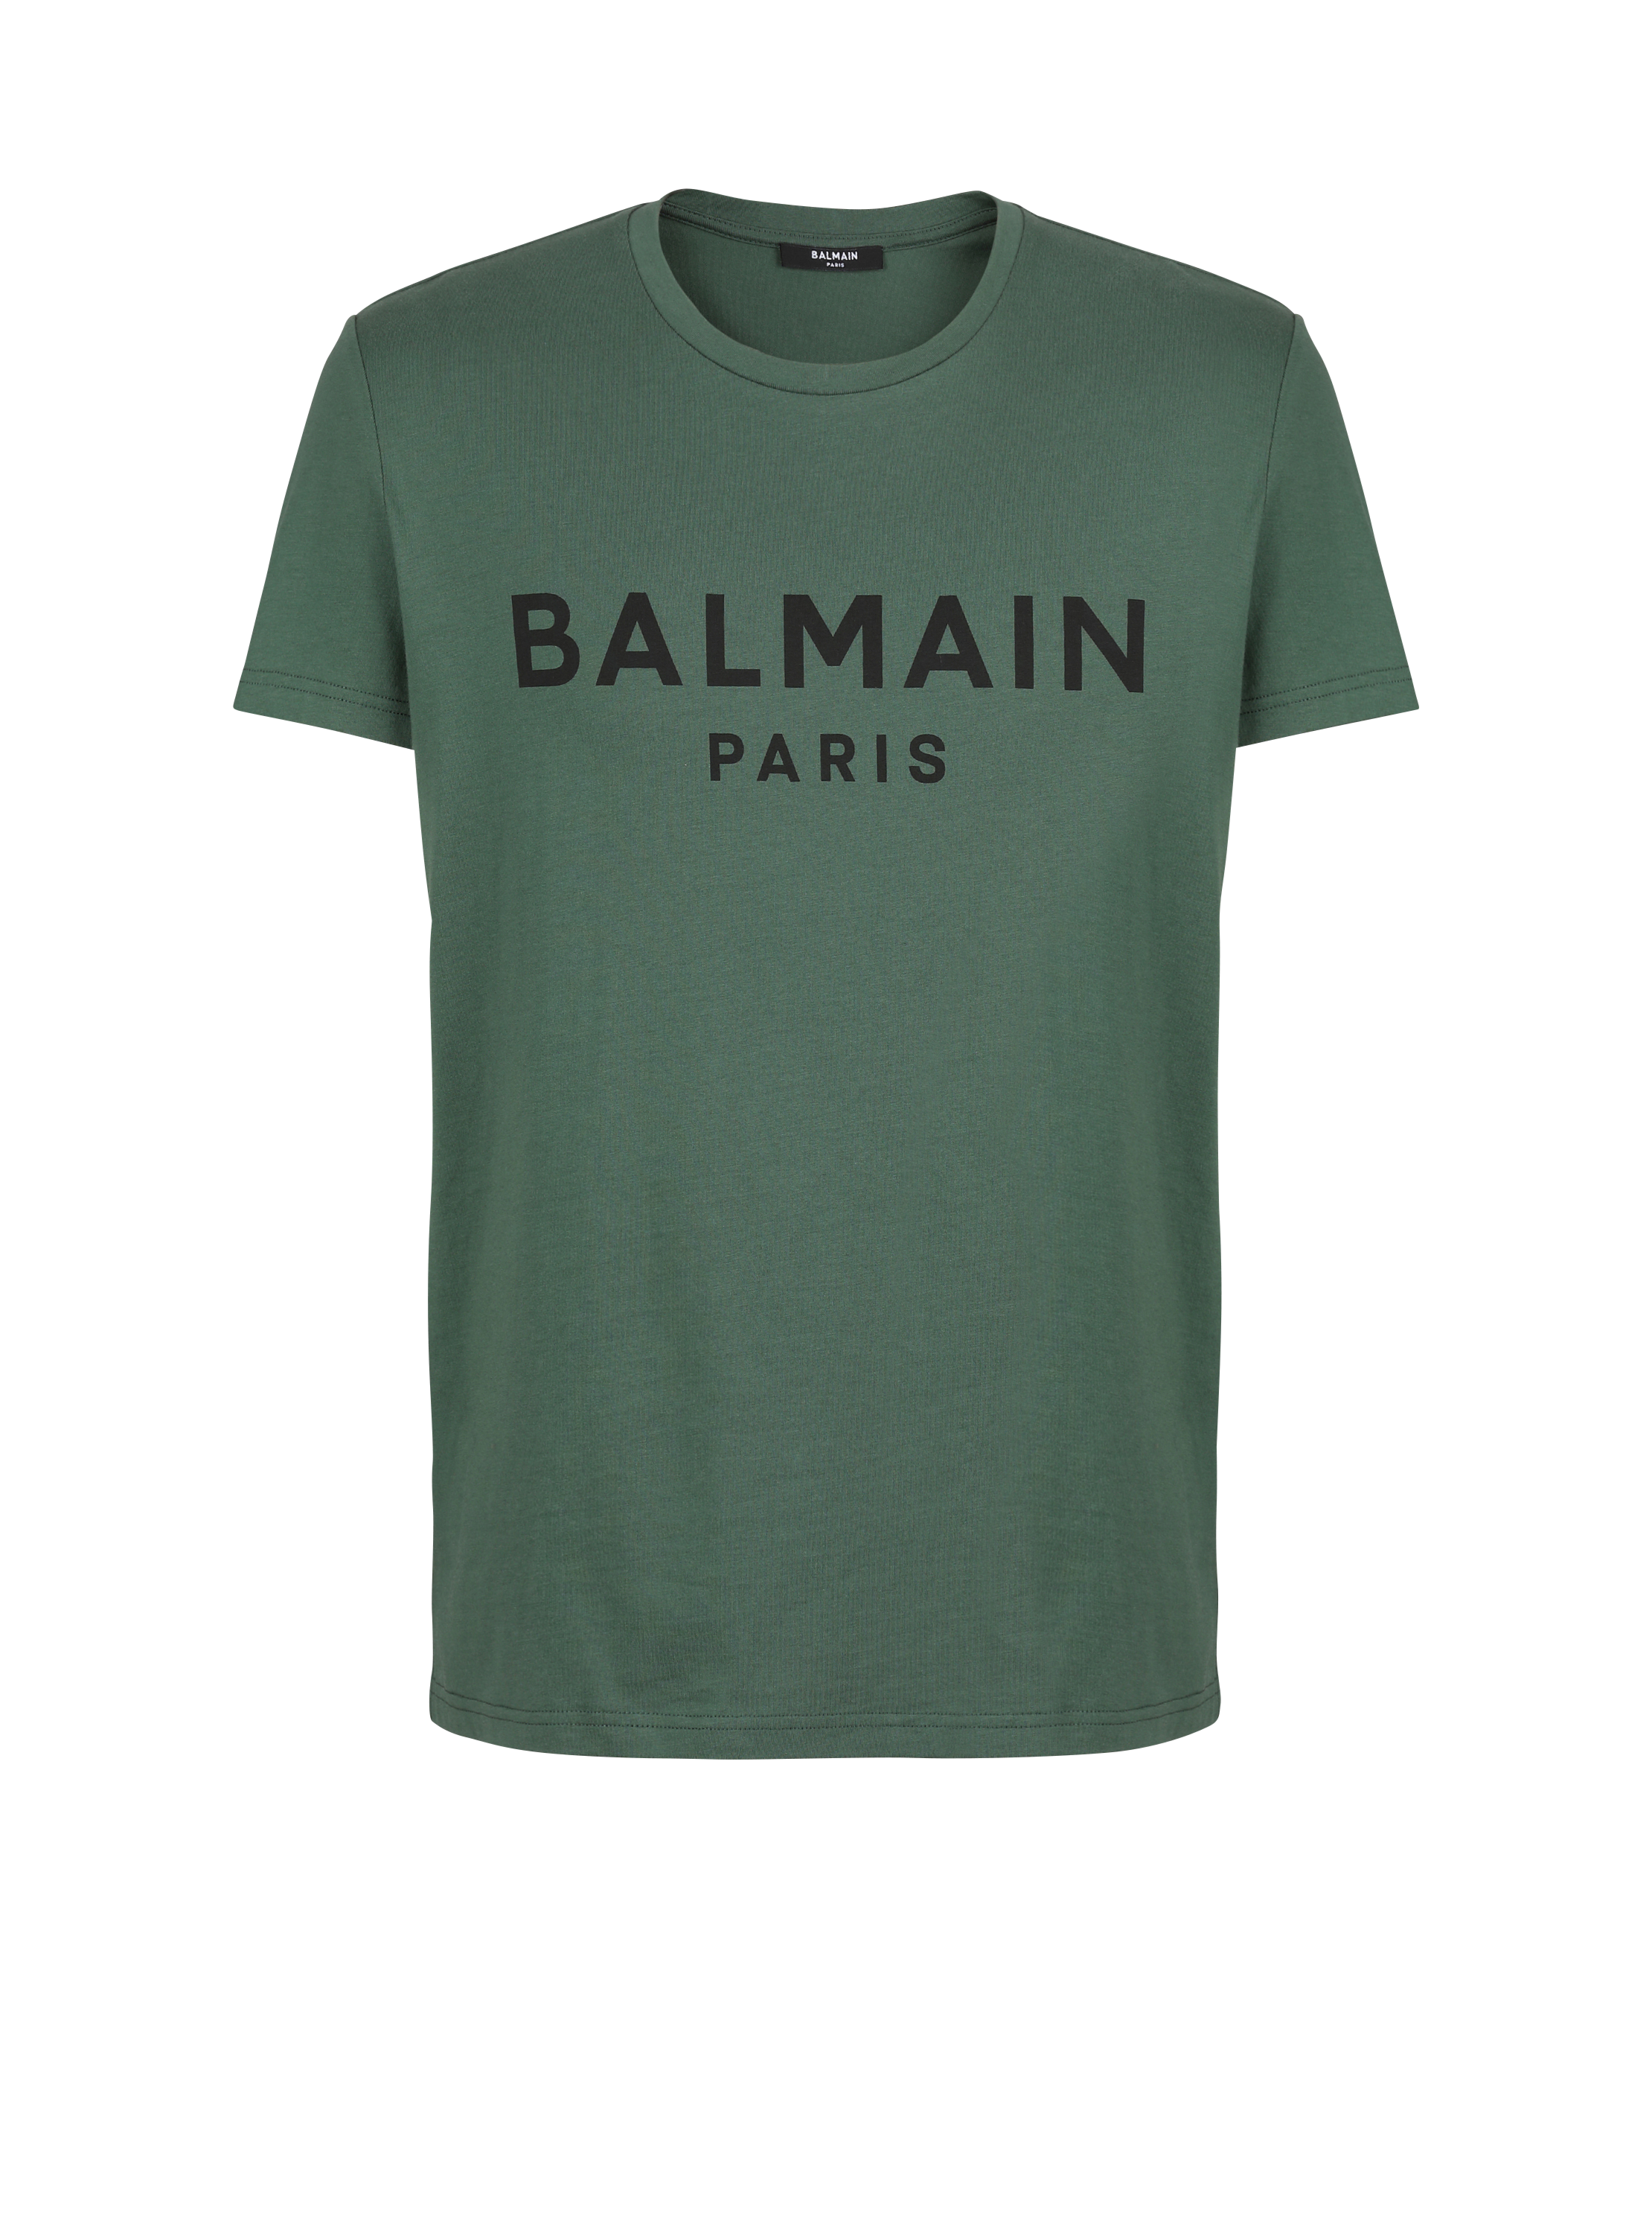 Camiseta de algodón con estampado del logotipo Balmain Paris, verde, hi-res